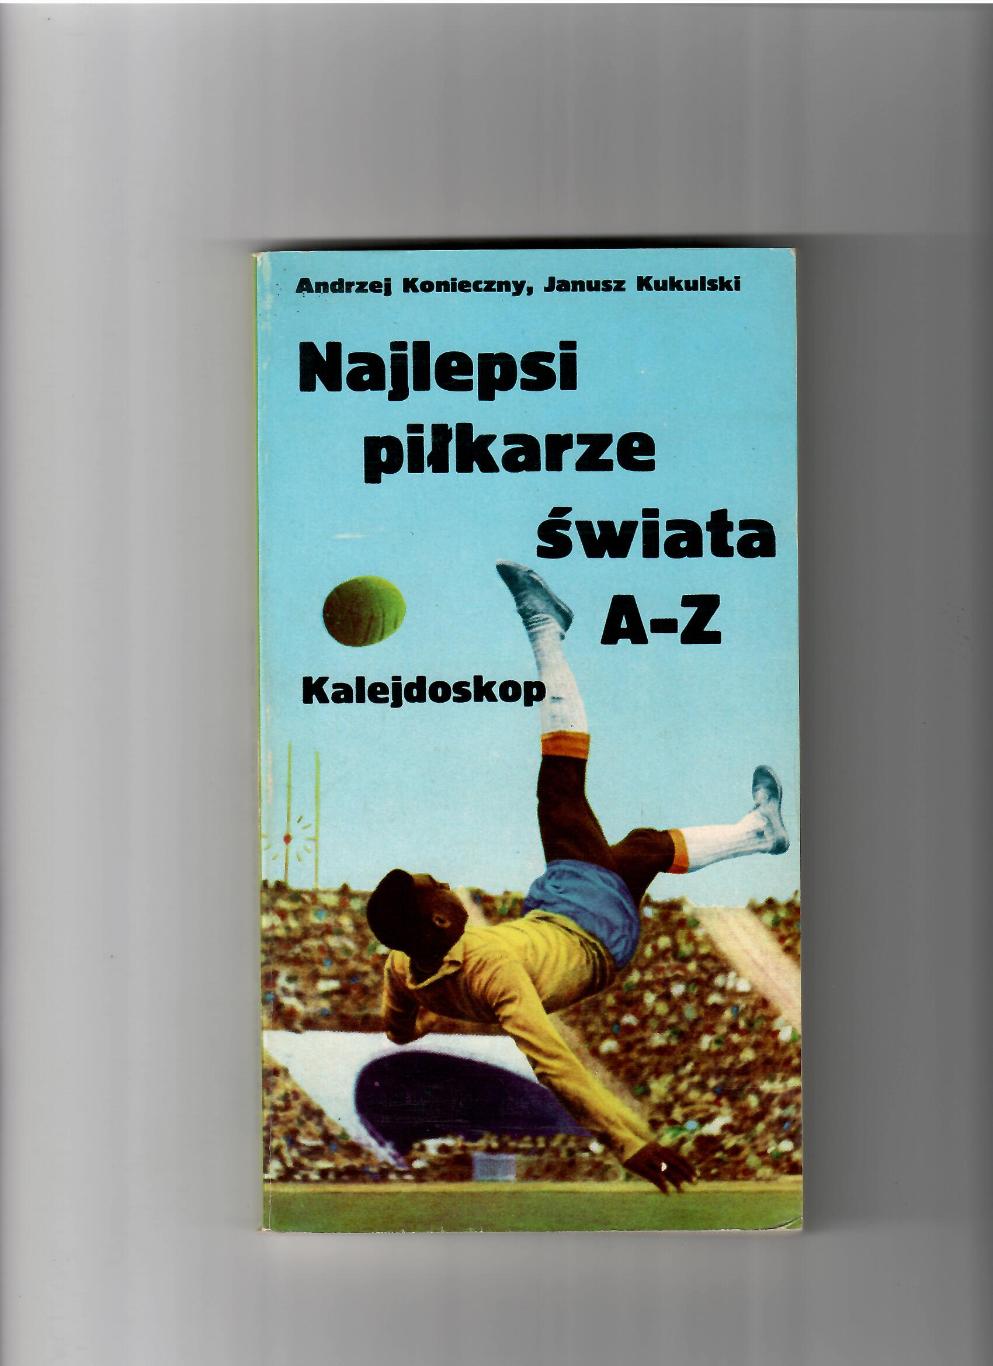 Футбол.Энциклопедия.Польша 1978